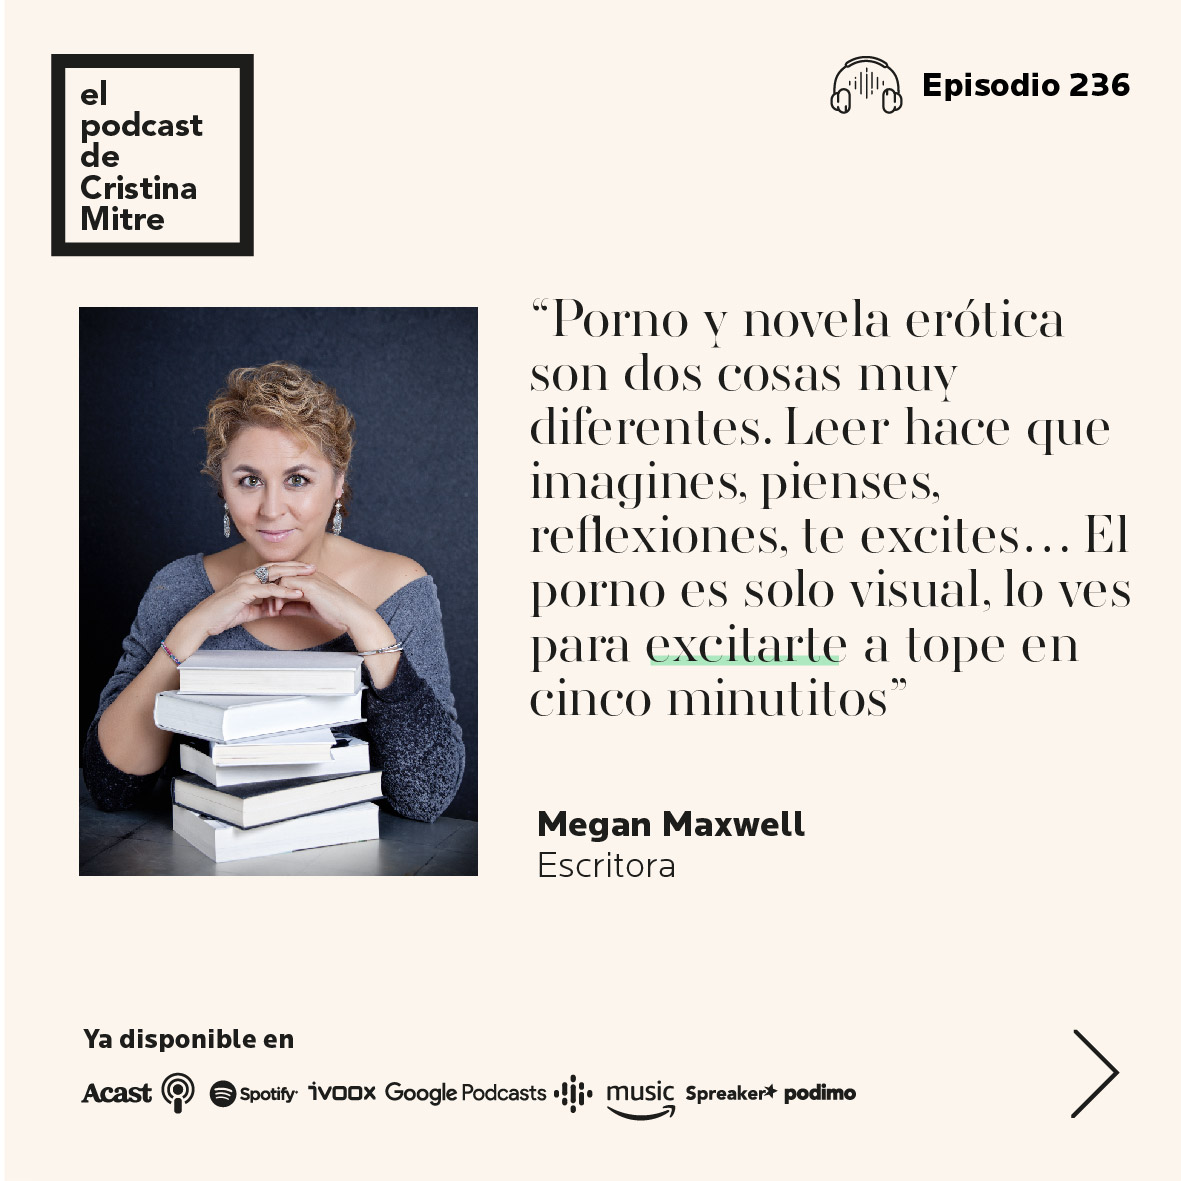 El podcast de Cristina Mitre escritora